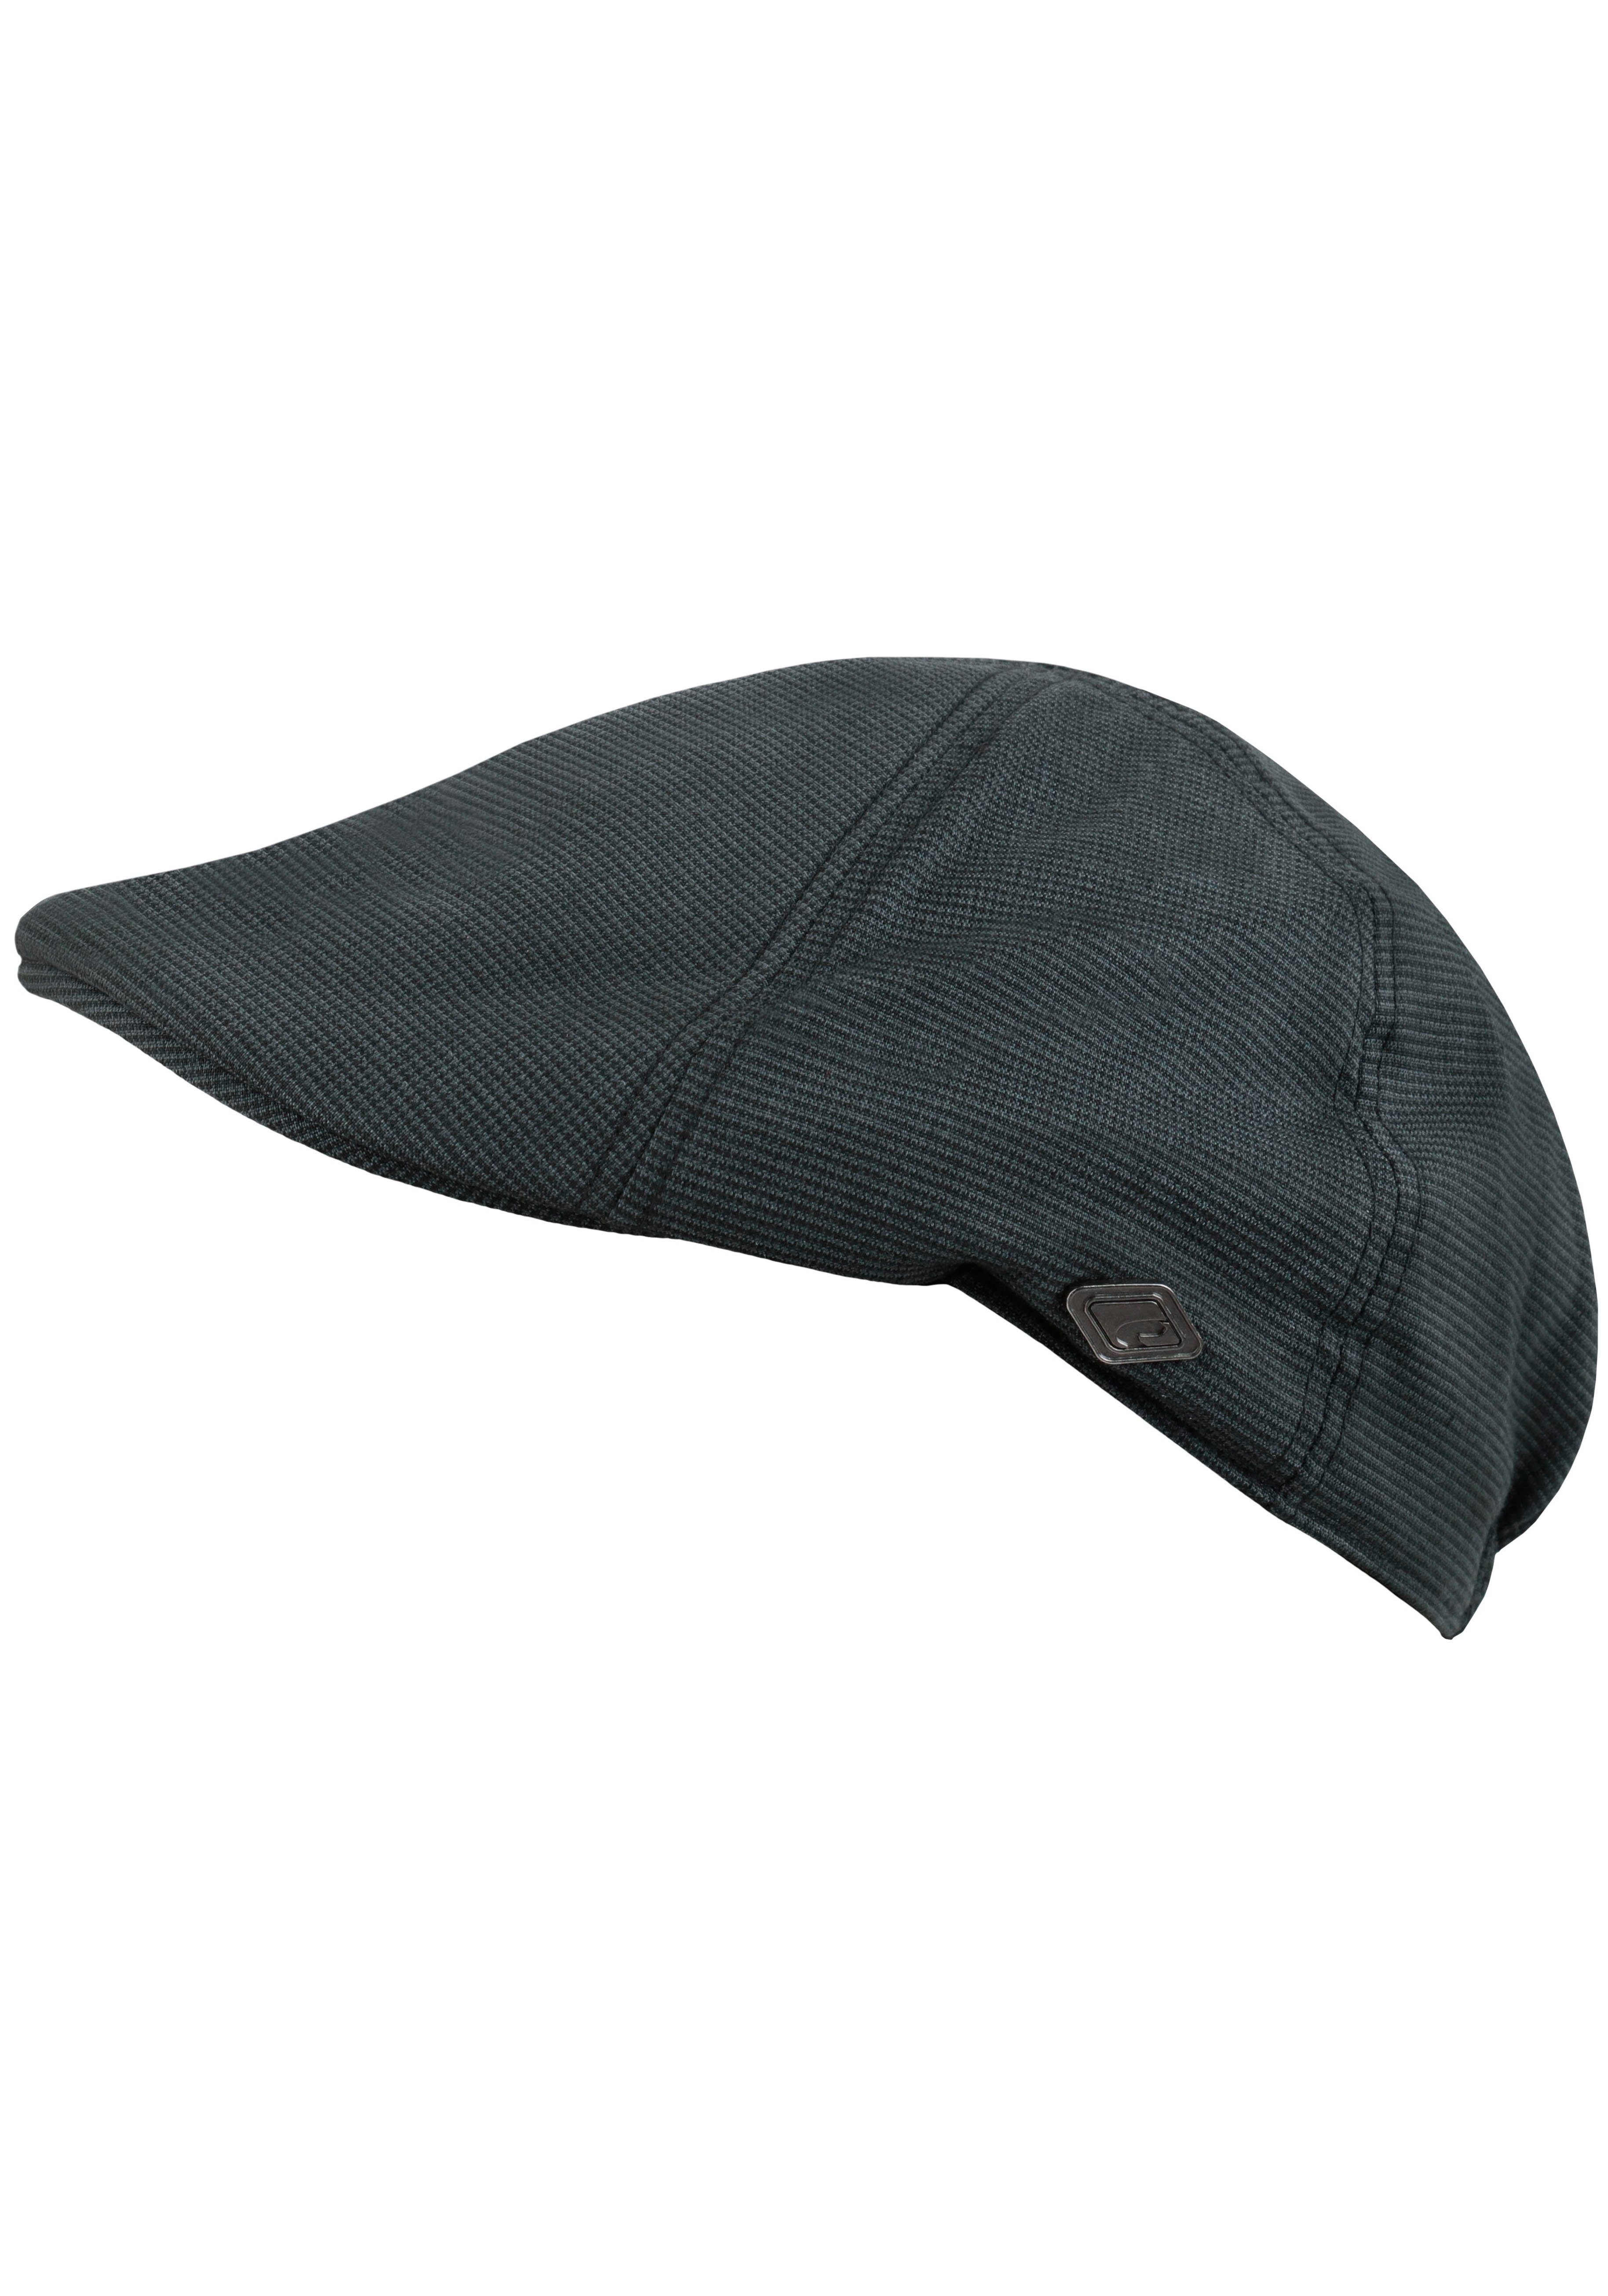 chillouts grau-schwarz feinem Flat Hat mit Schiebermütze Cap Karomuster Kyoto